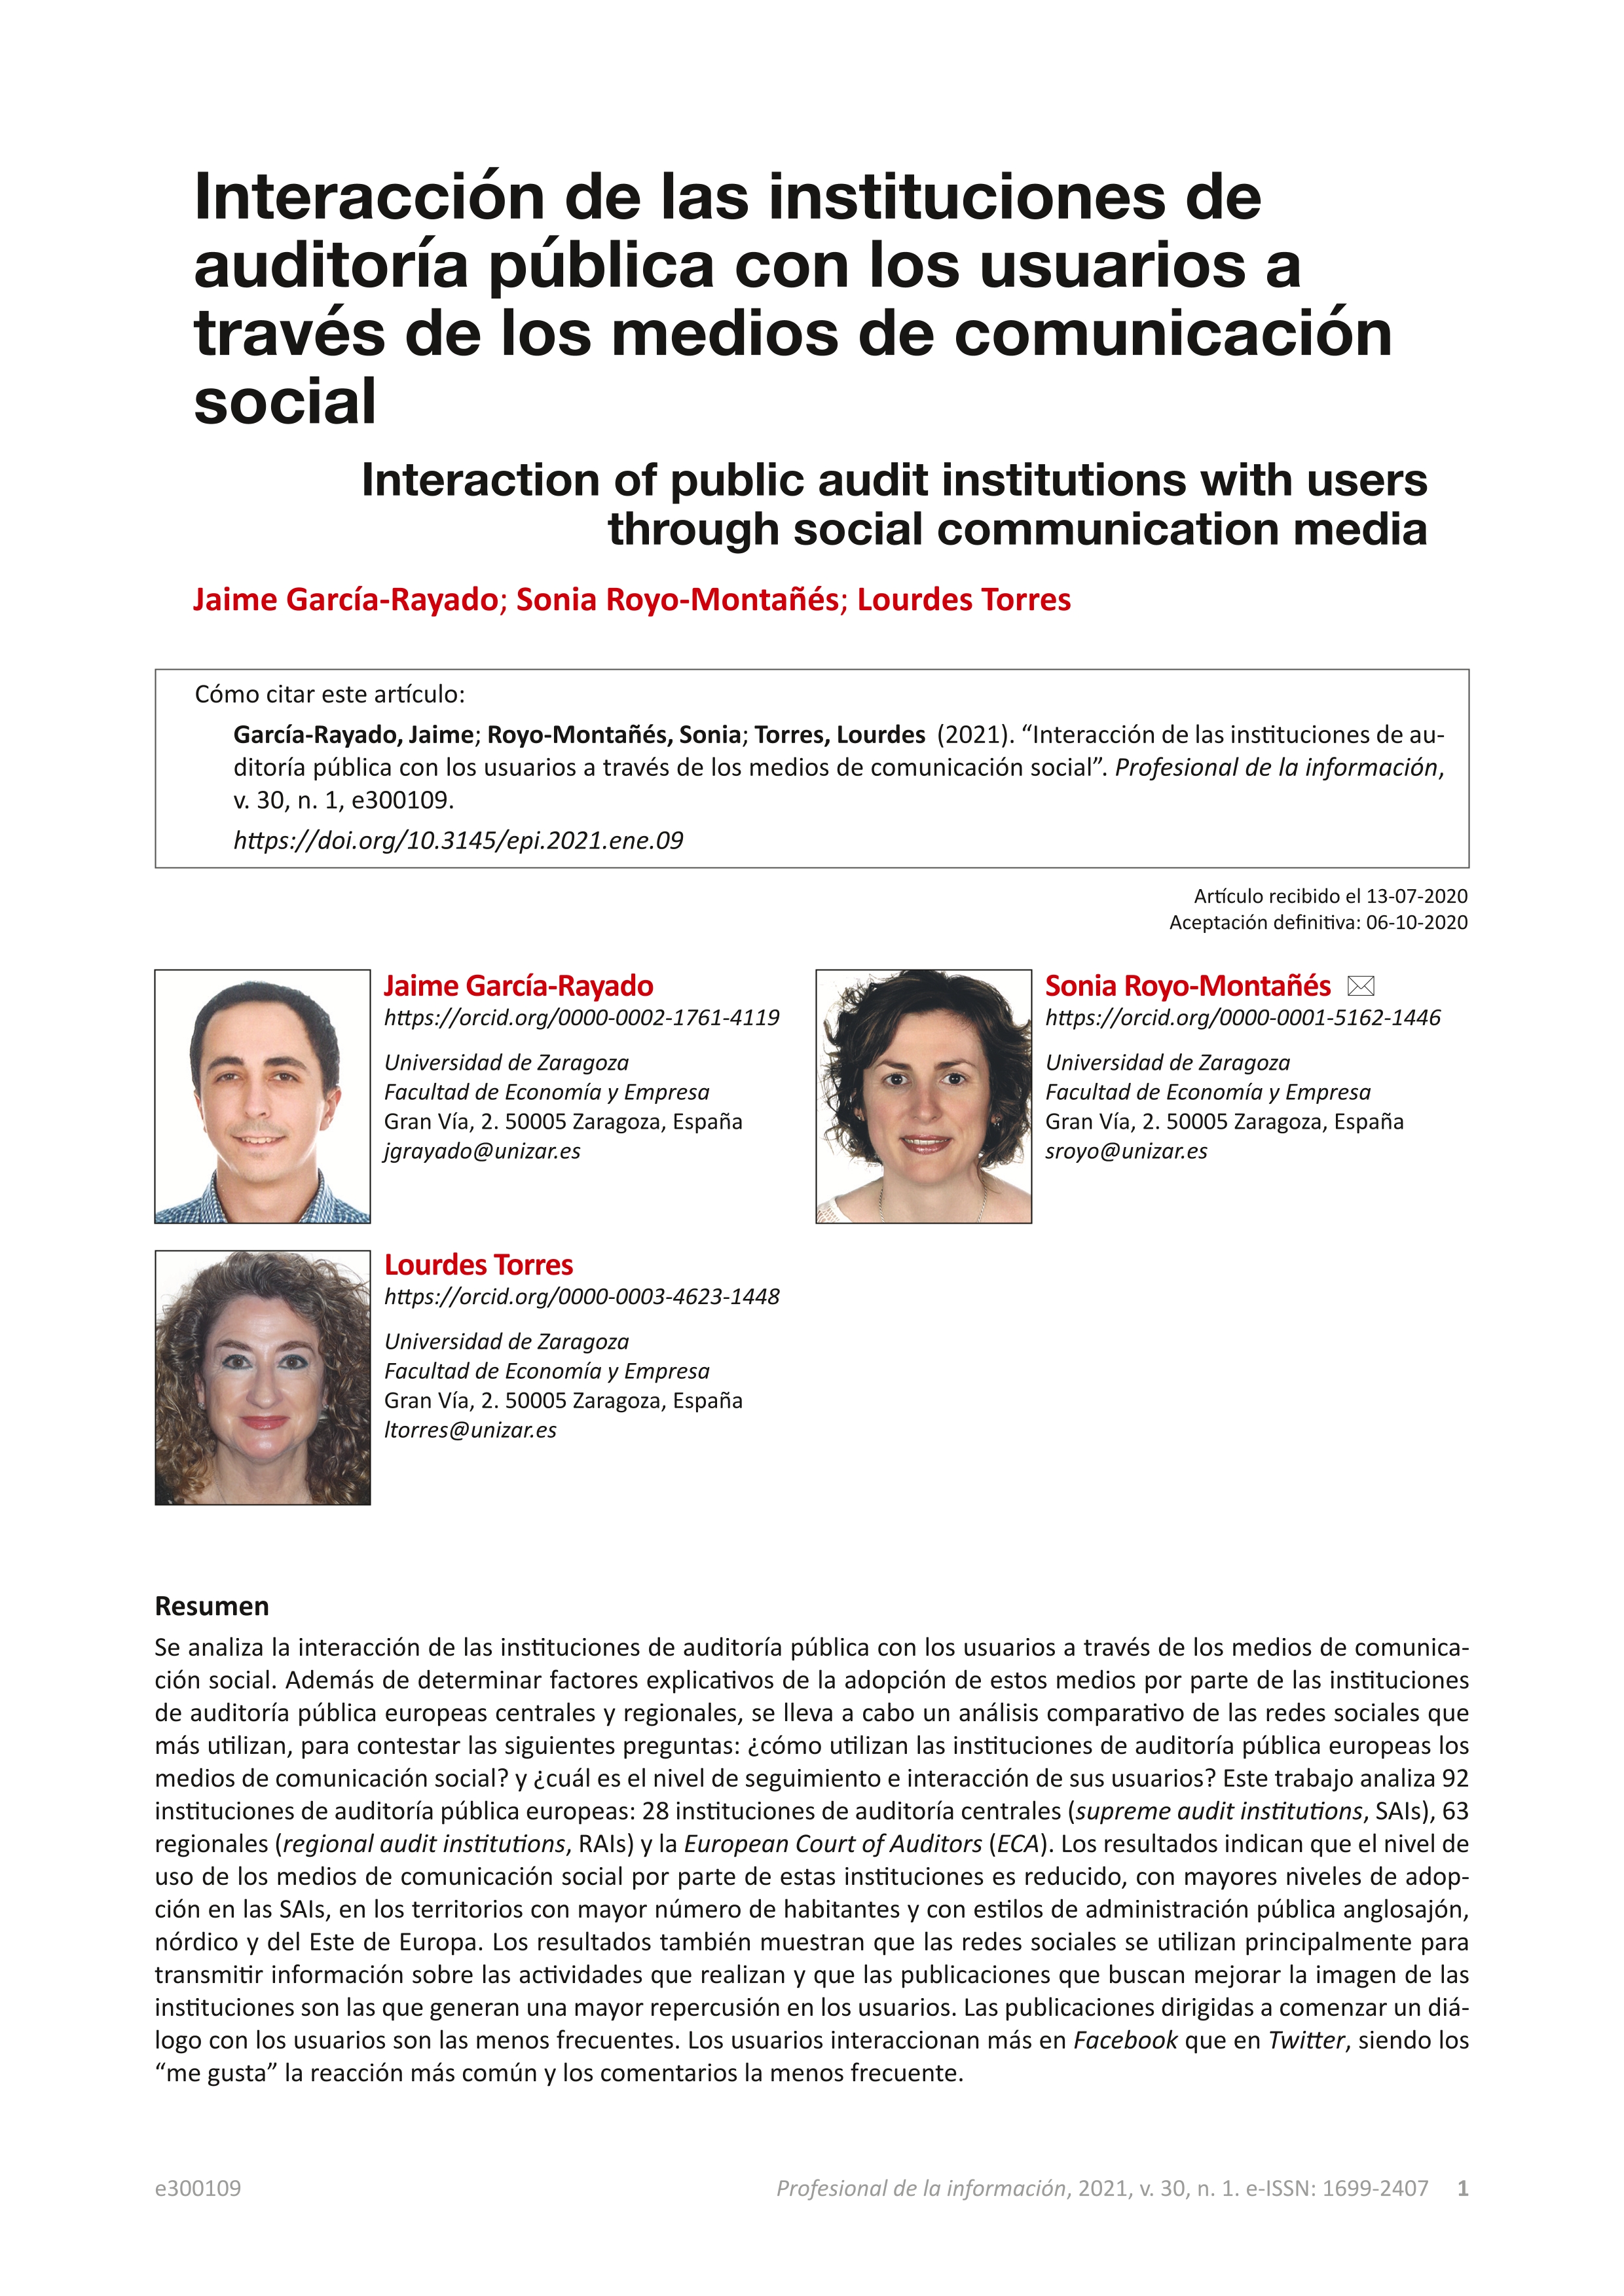 Interacción de las instituciones de auditoría pública con los usuarios a través de los medios de comunicación social